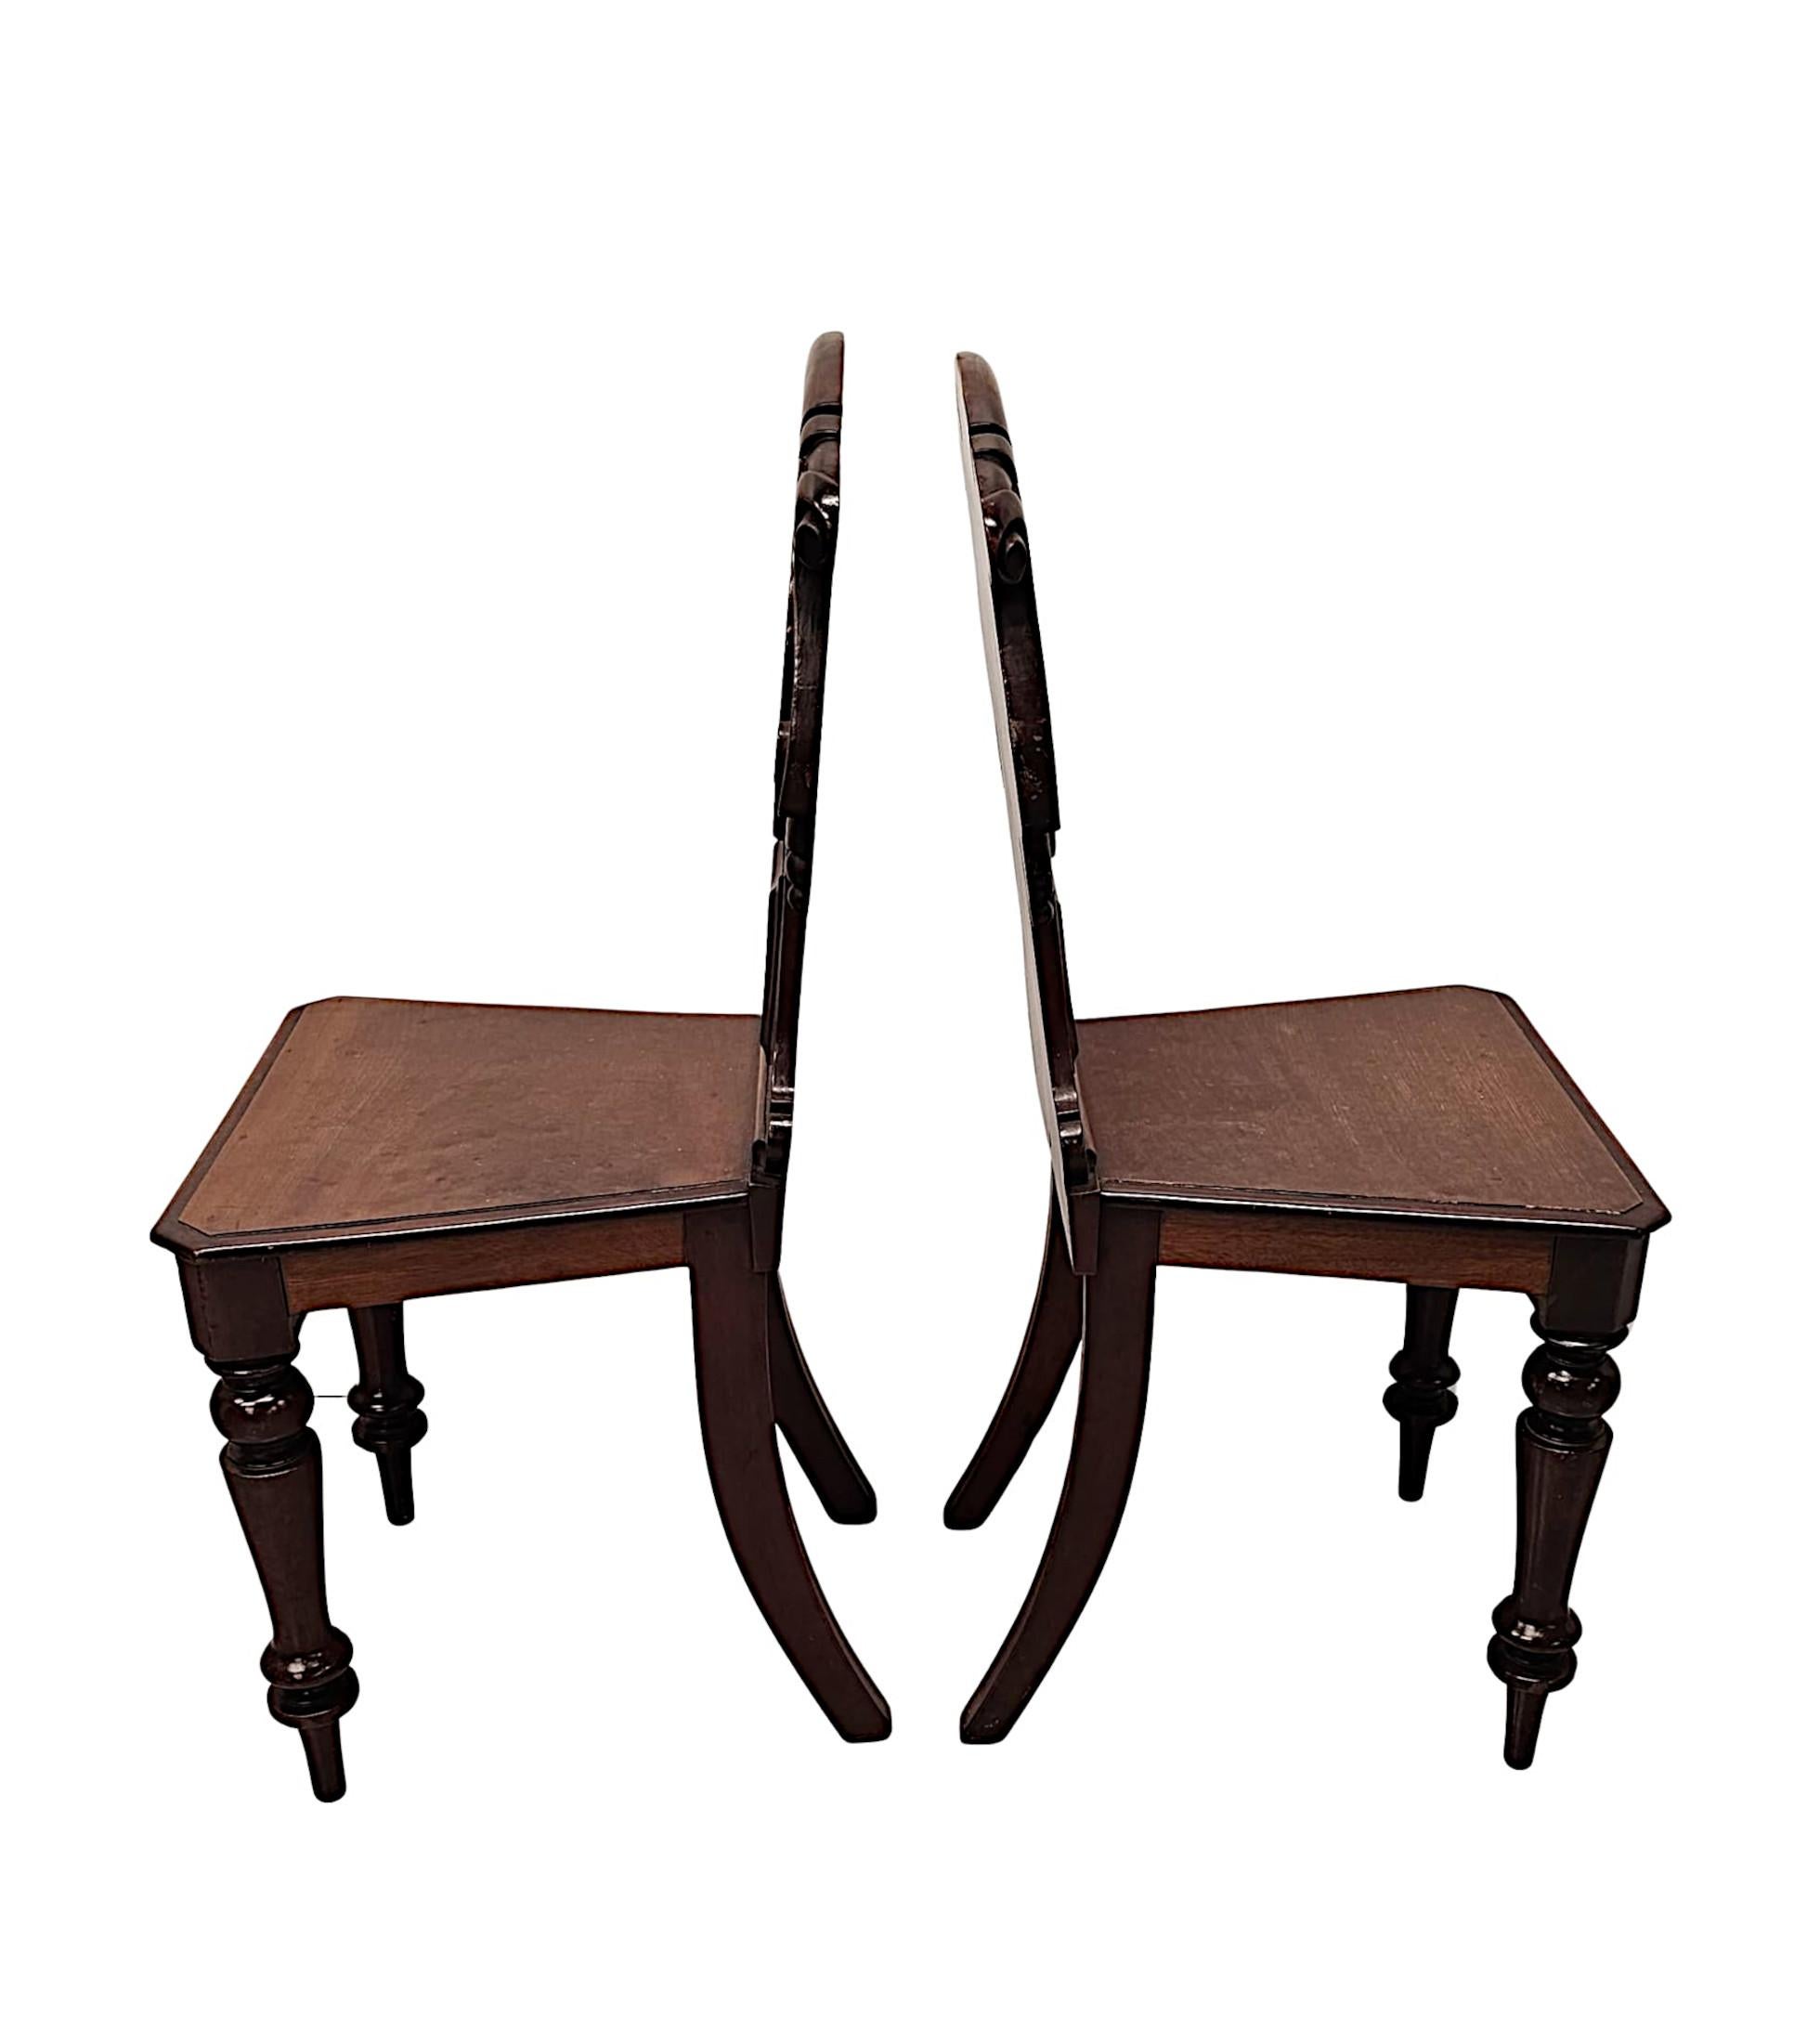 Une très belle paire de chaises de hall en acajou bien figuré du 19ème siècle, fabuleusement sculptées à la main avec une patine et un grain magnifiquement riches.  Le dos en forme de bouclier, mouluré et cannelé, présente de magnifiques détails